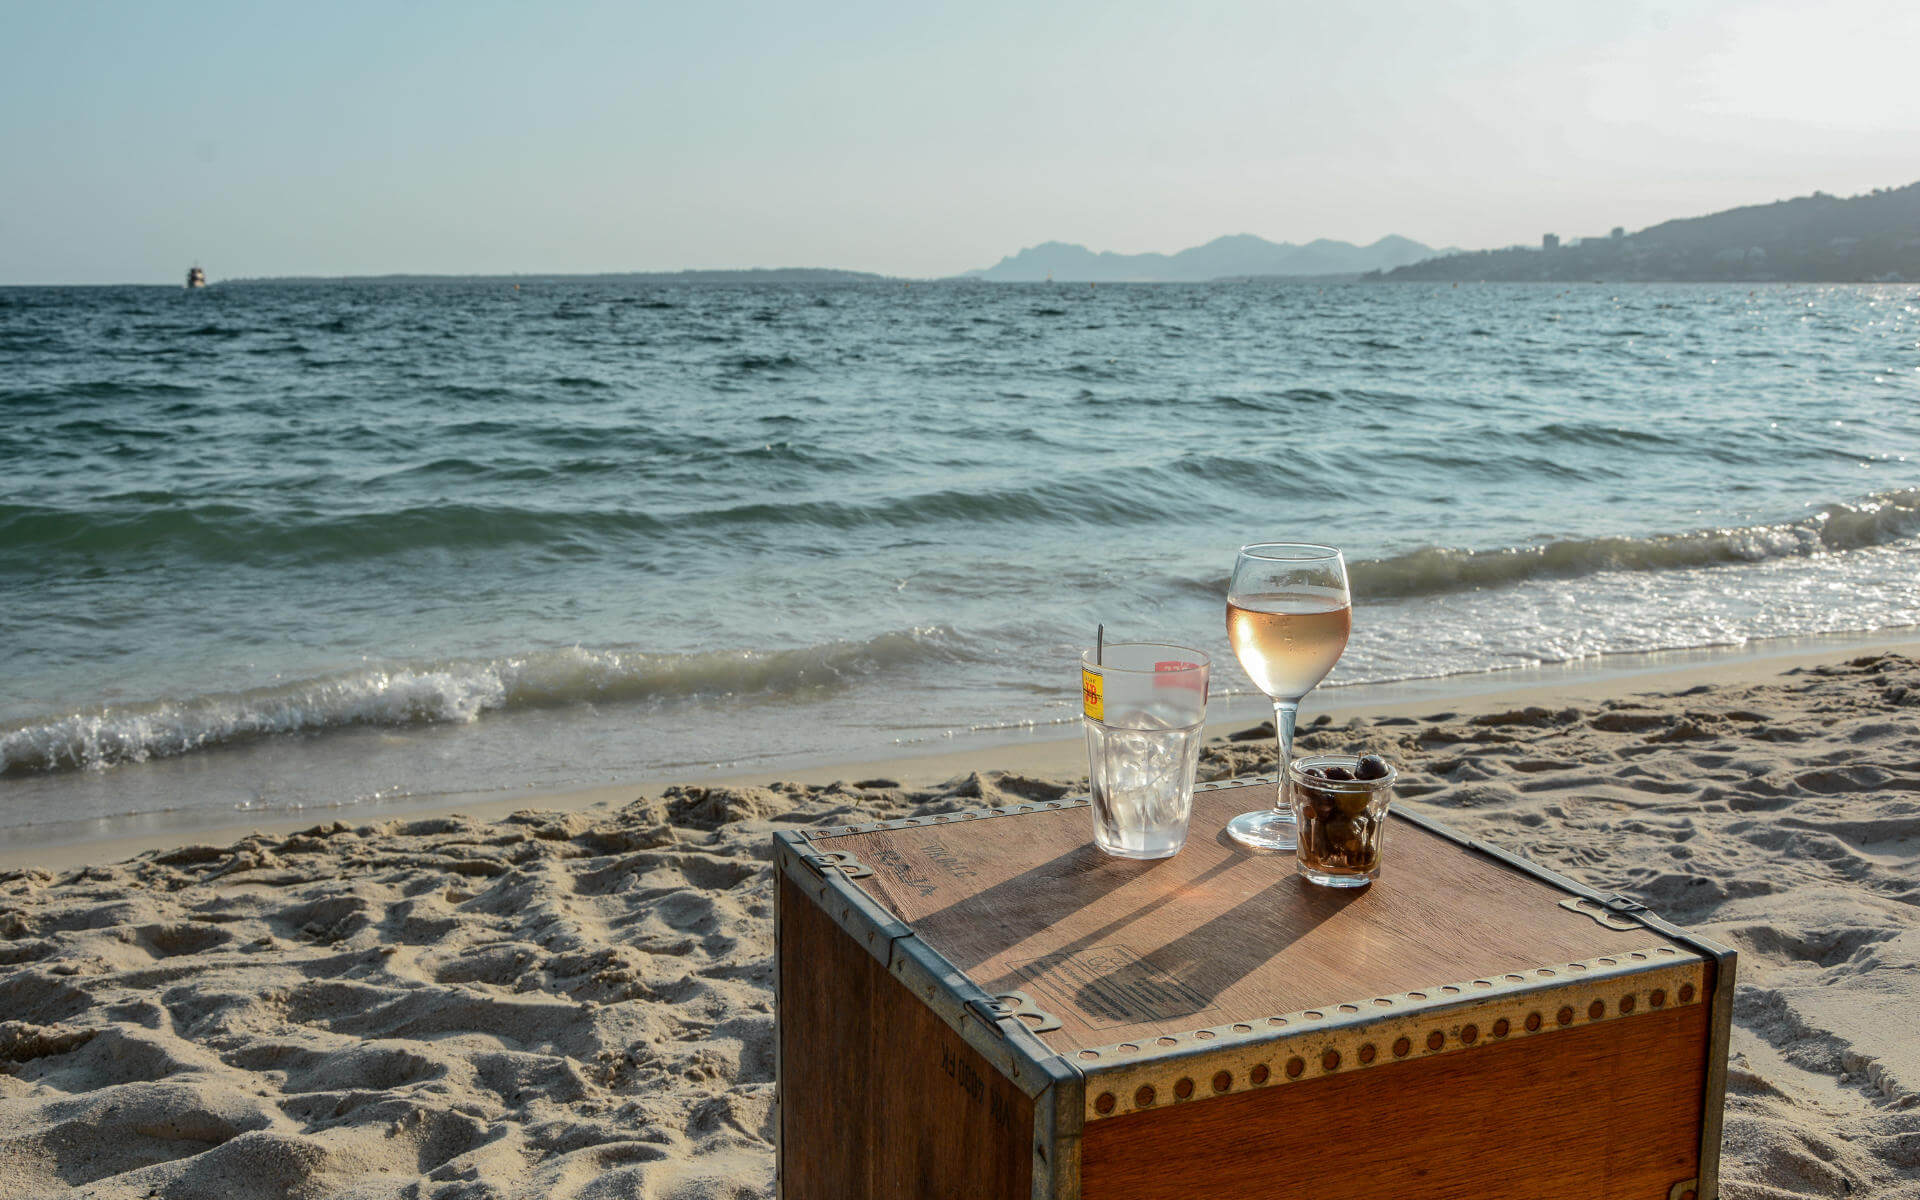 Kiste mit Vino am Strand vor Meereskulisse.